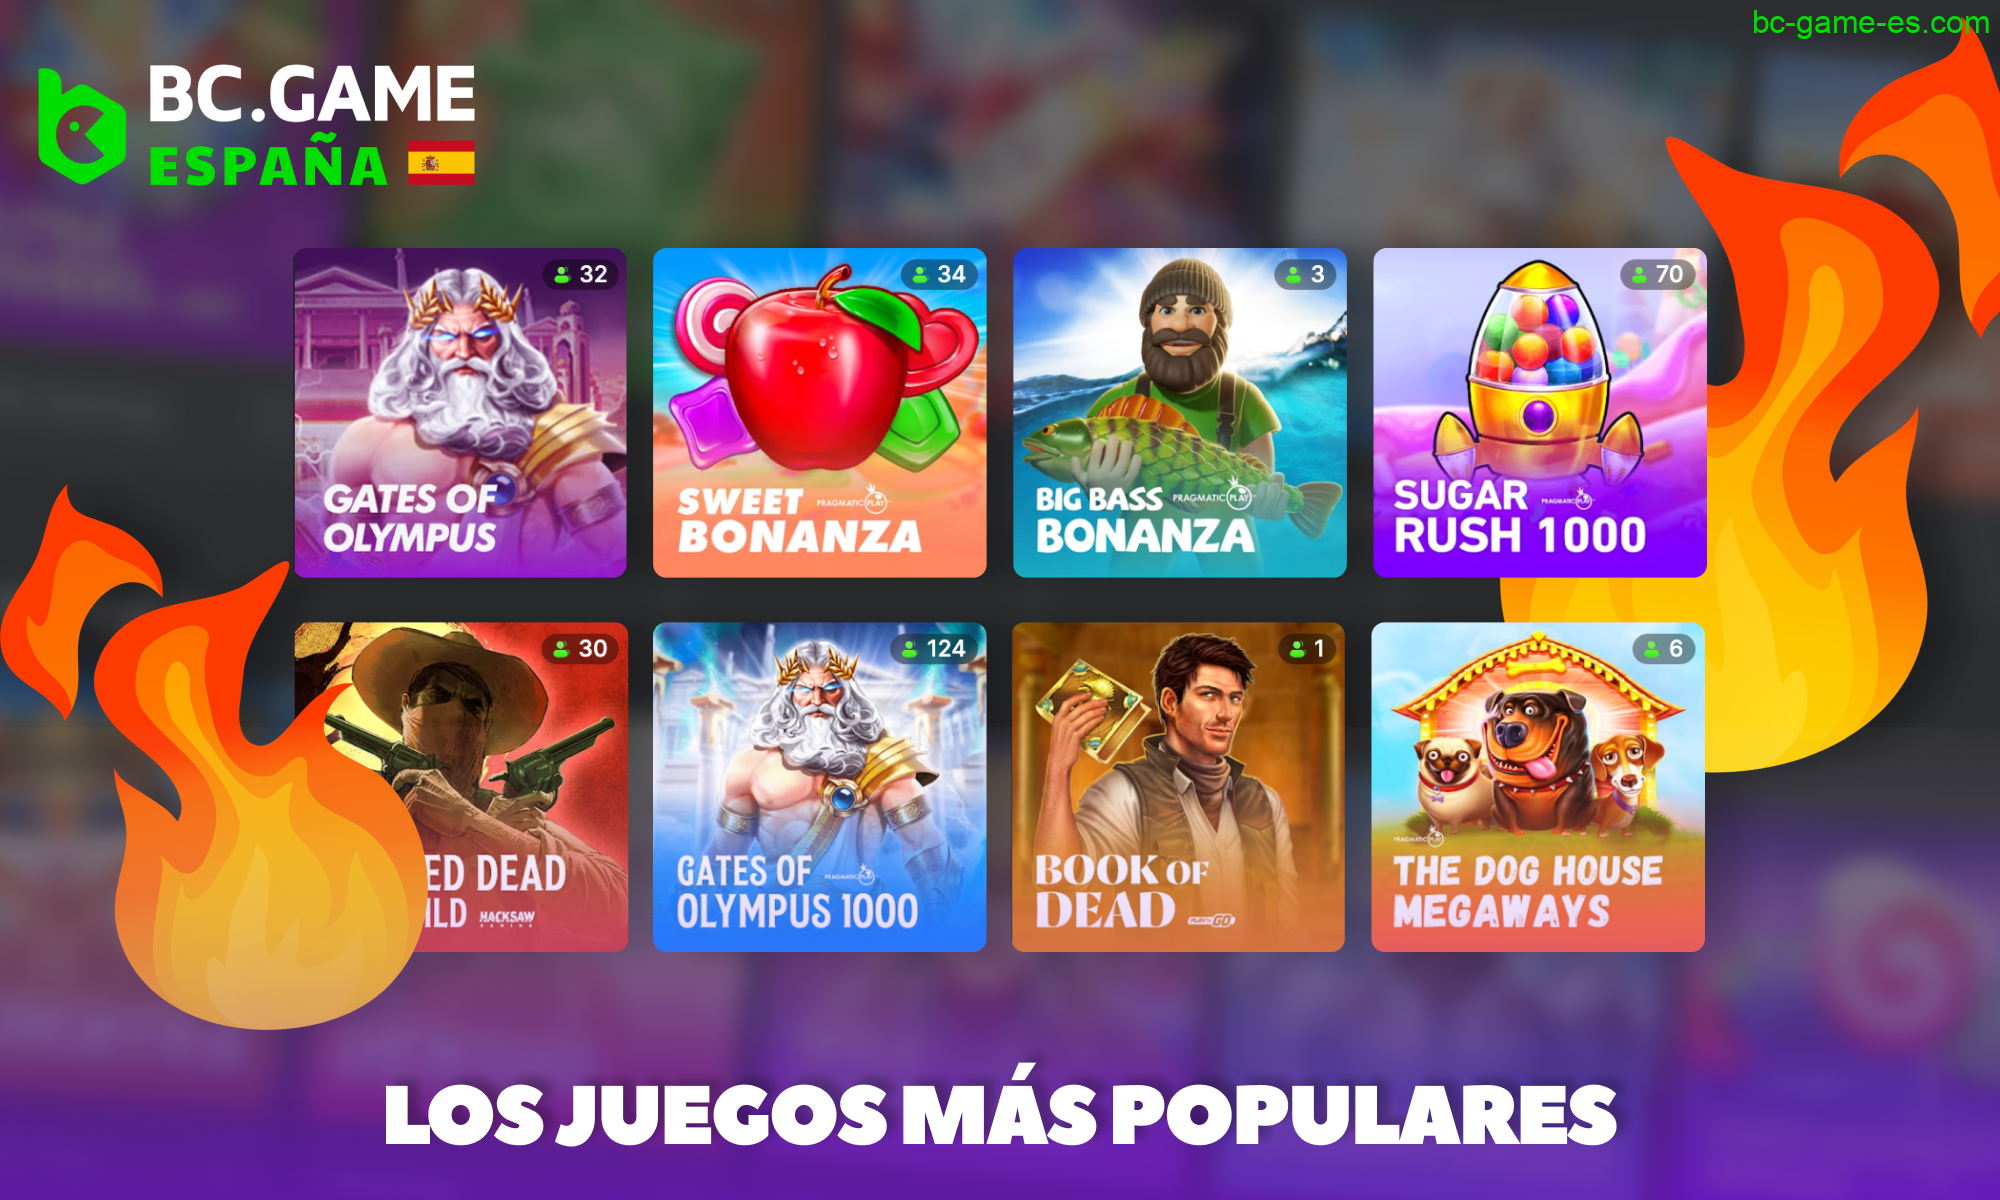 Sobre los juegos más populares de la plataforma BC Game en España